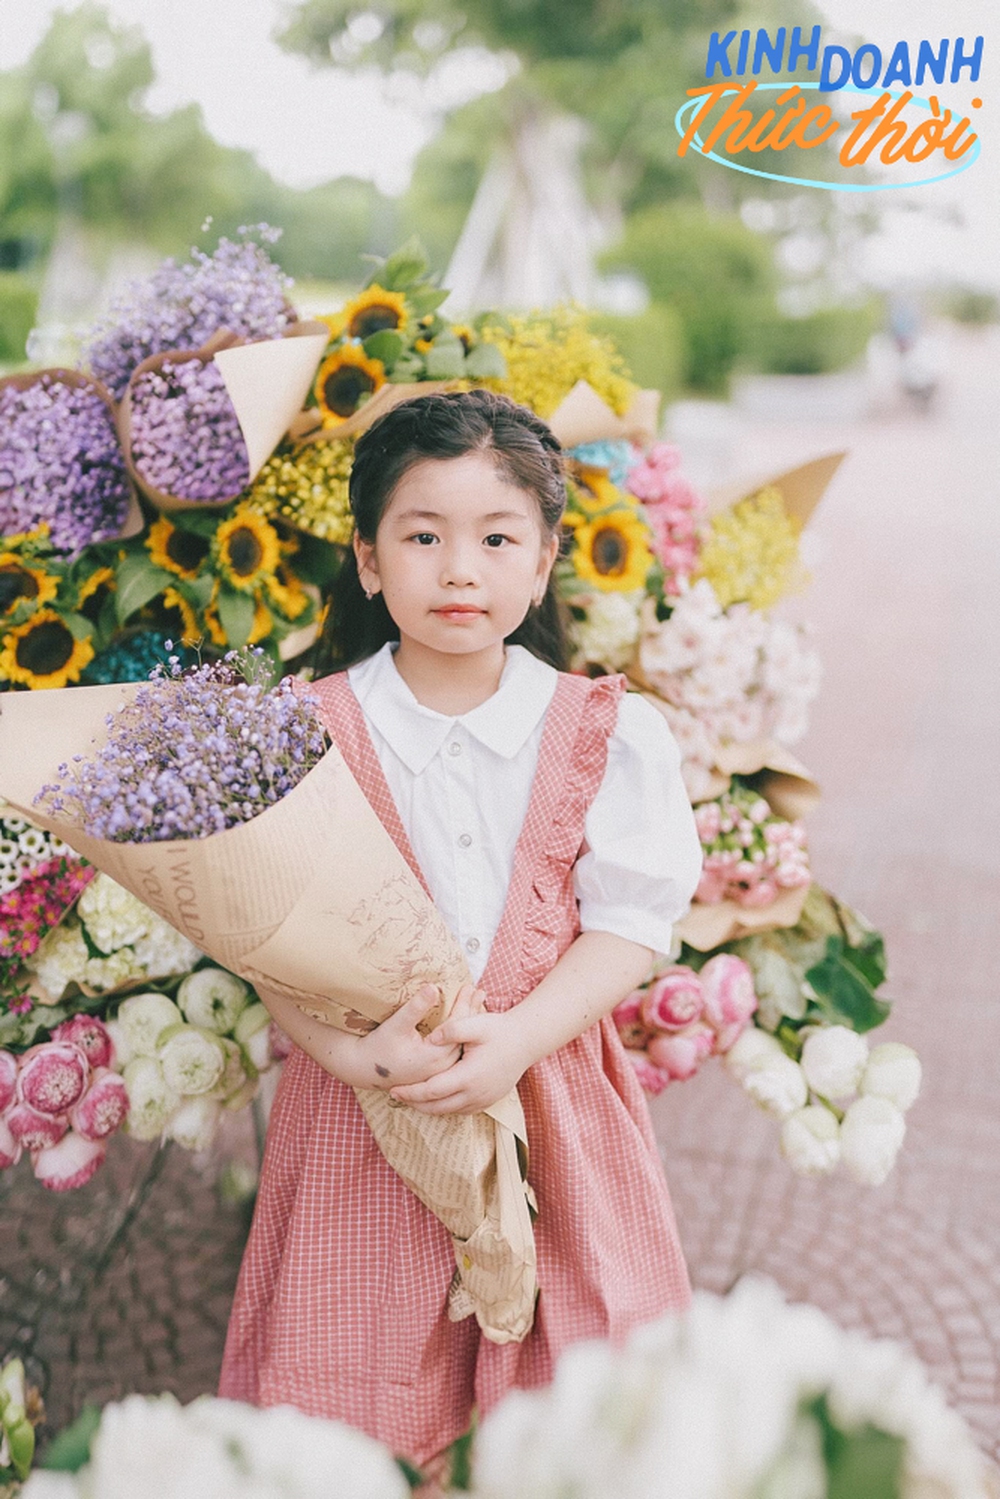 Gánh hoa đặc trưng của đường phố Hà Nội không ngờ lại mang tới cơ hội kiếm cả triệu mỗi ngày cho người dân thành phố khác - Ảnh 7.